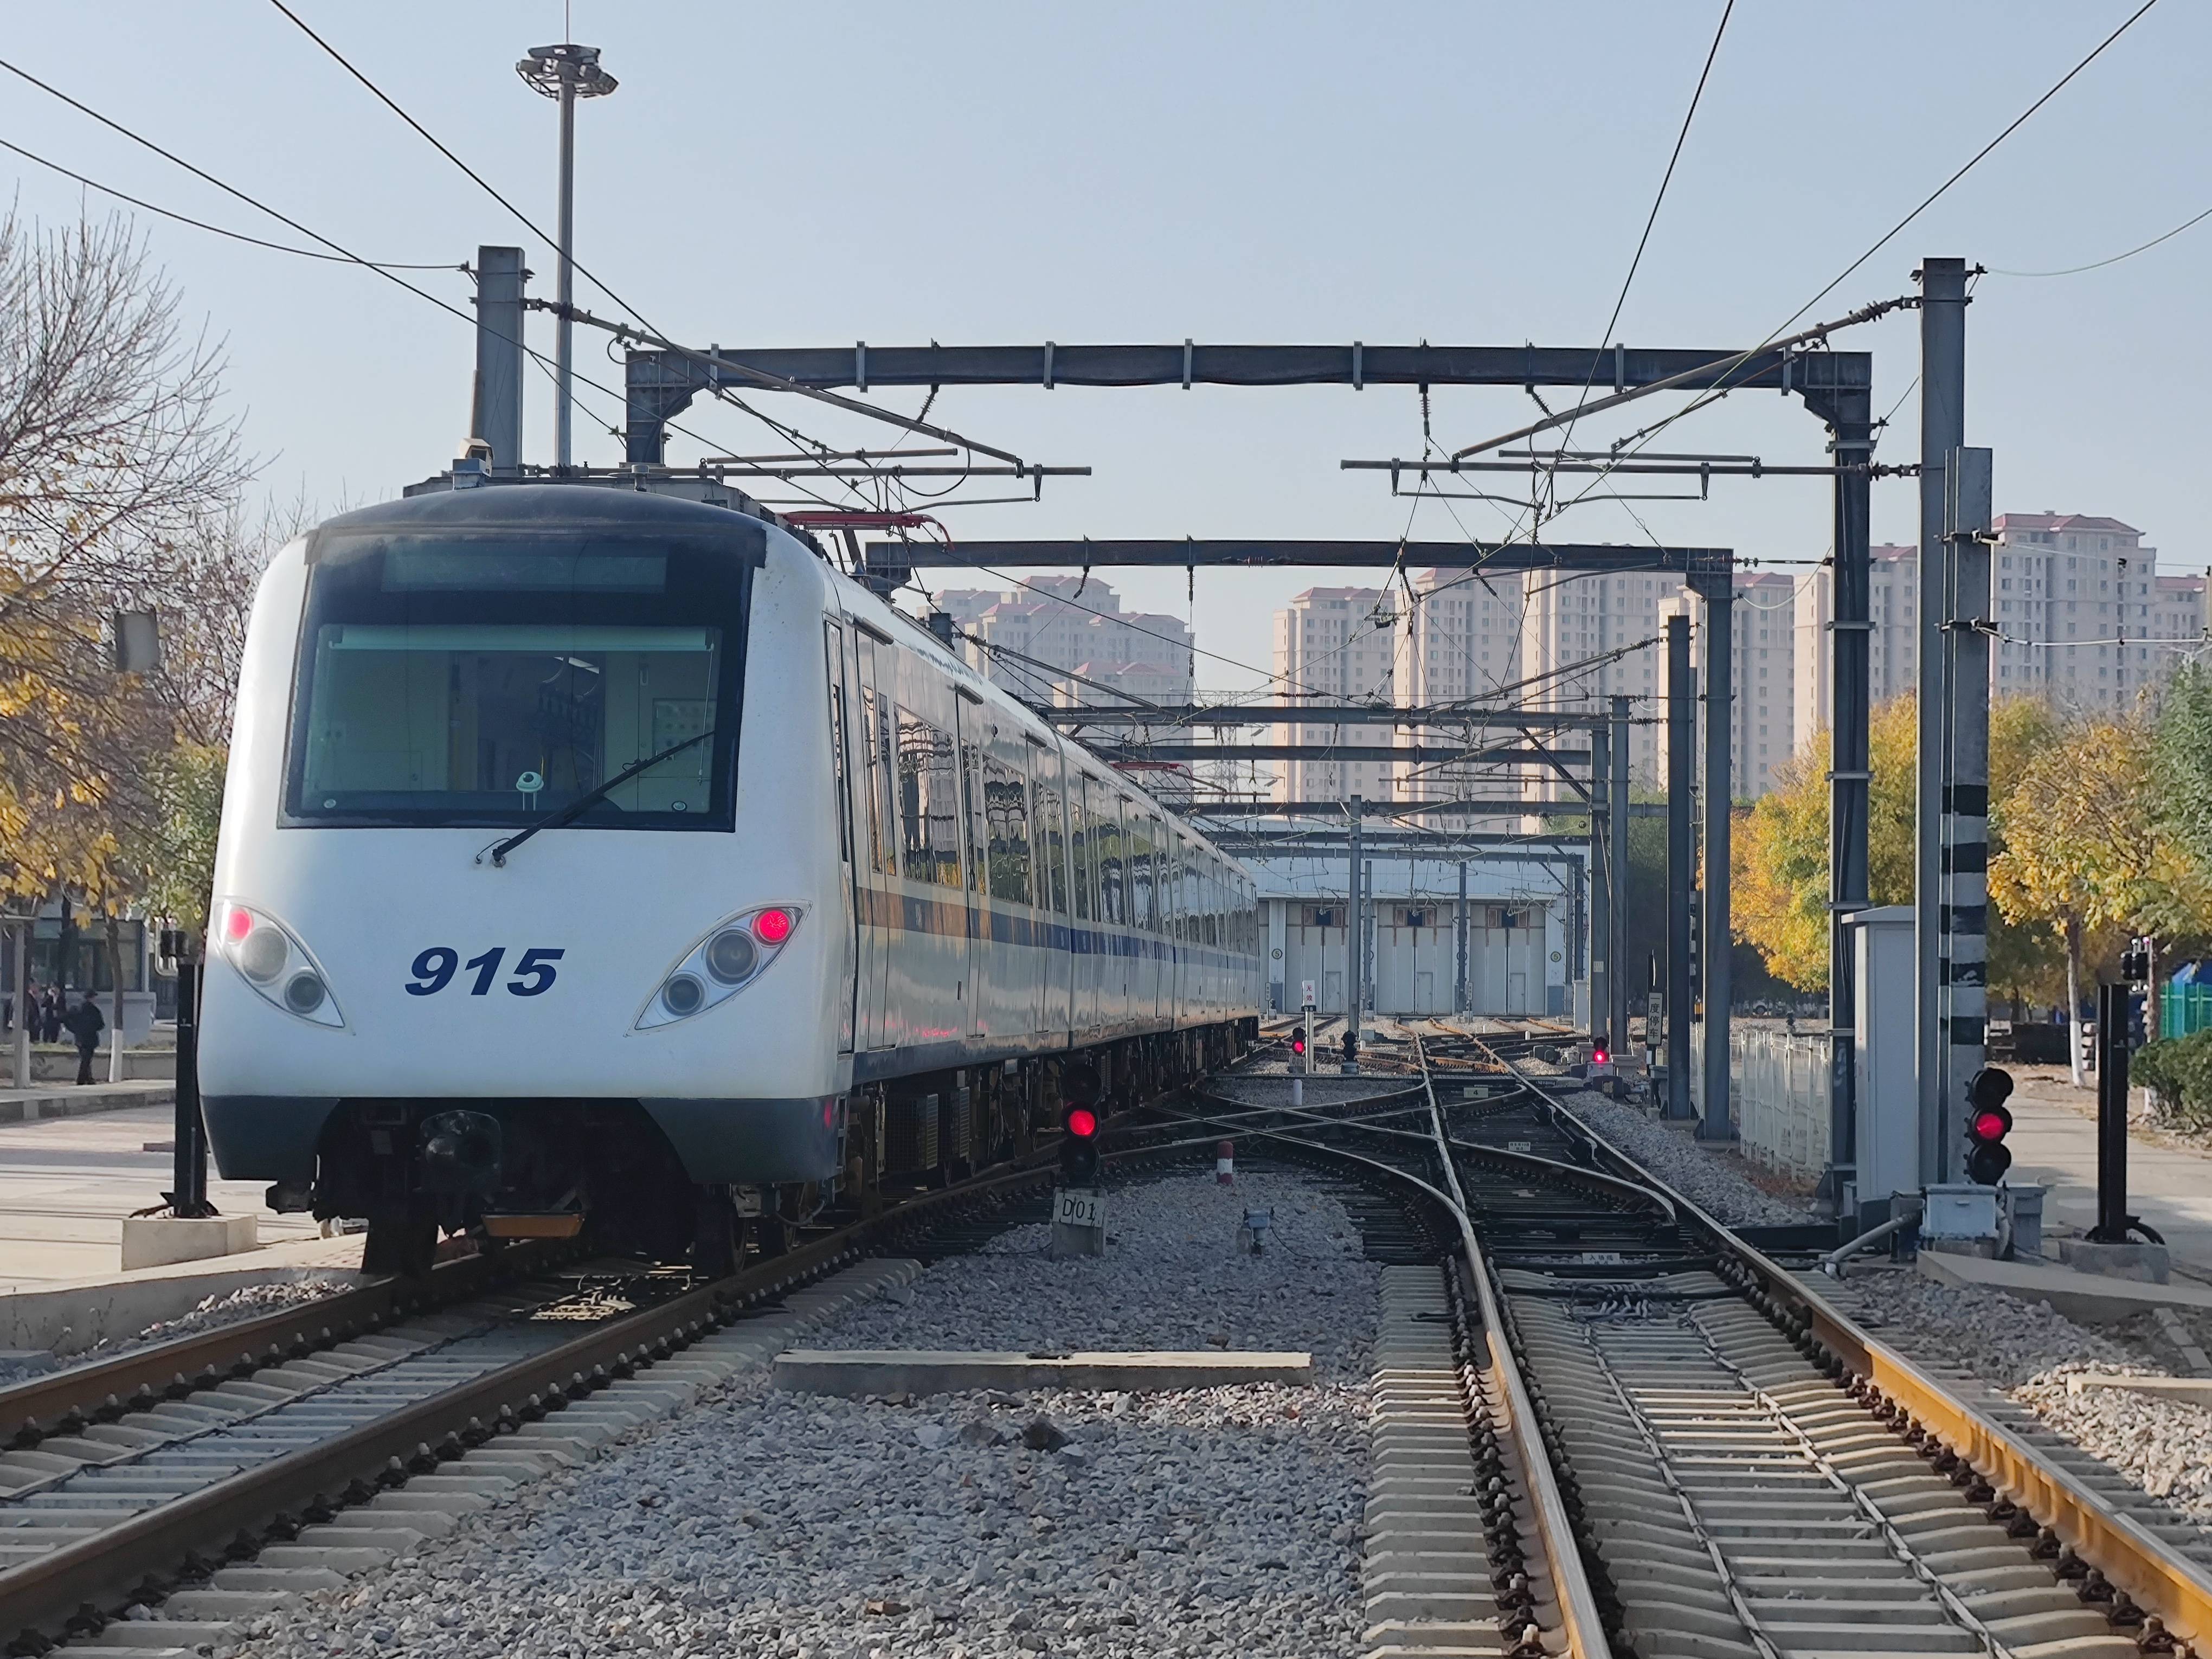 津滨轻轨9号线信号系统 更新改造工程正式启动